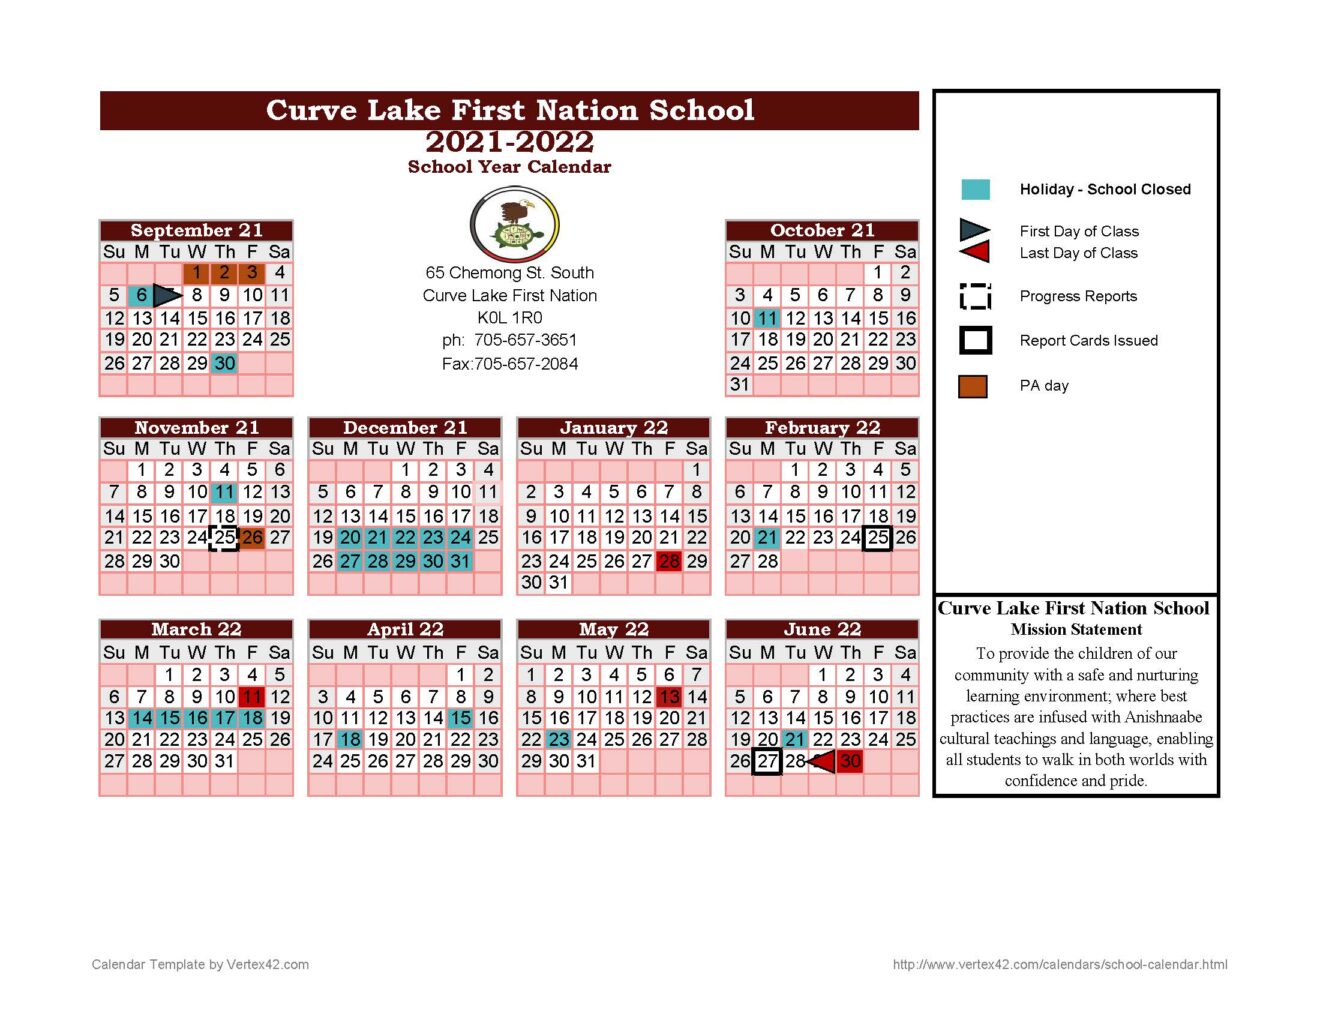 School Year Calendar - Curve Lake First Nation School